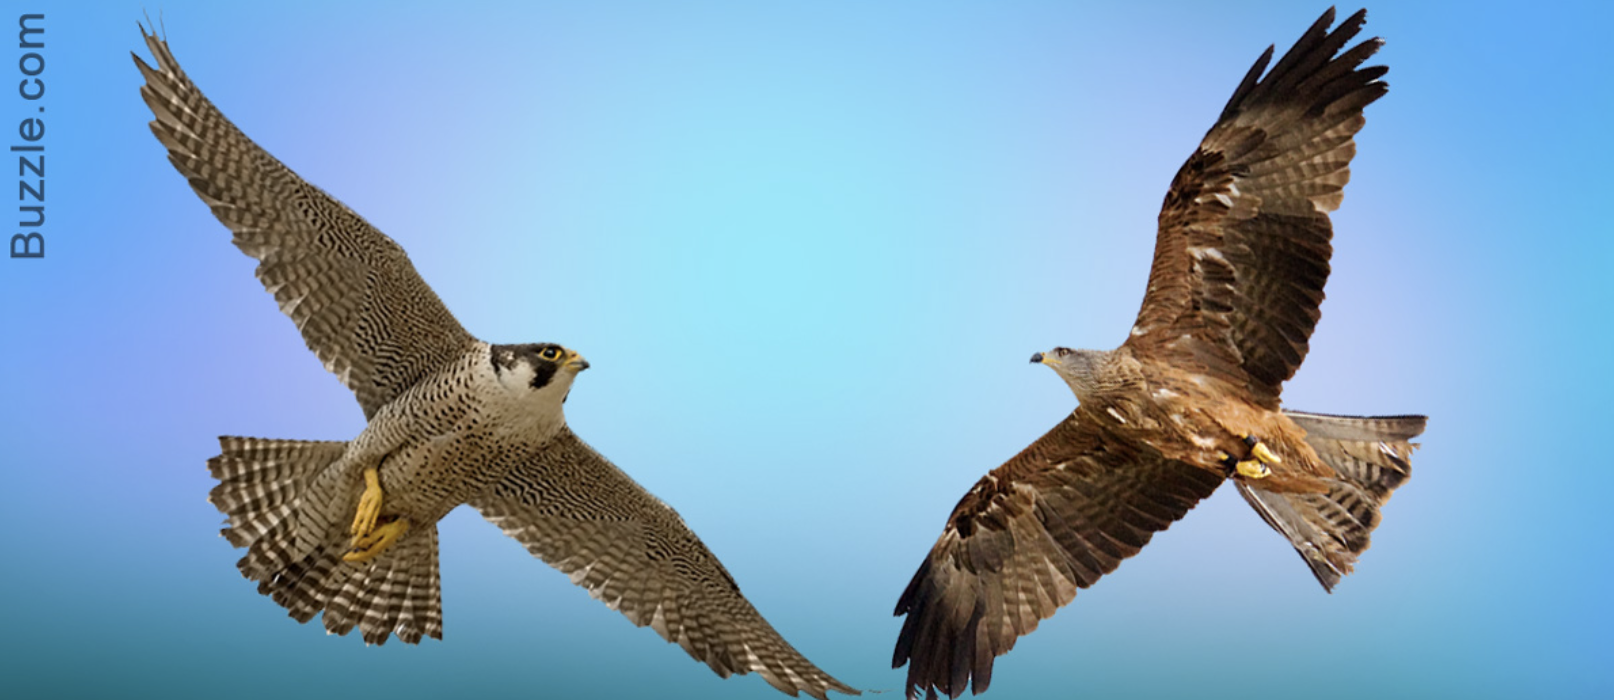 falcon and hawk